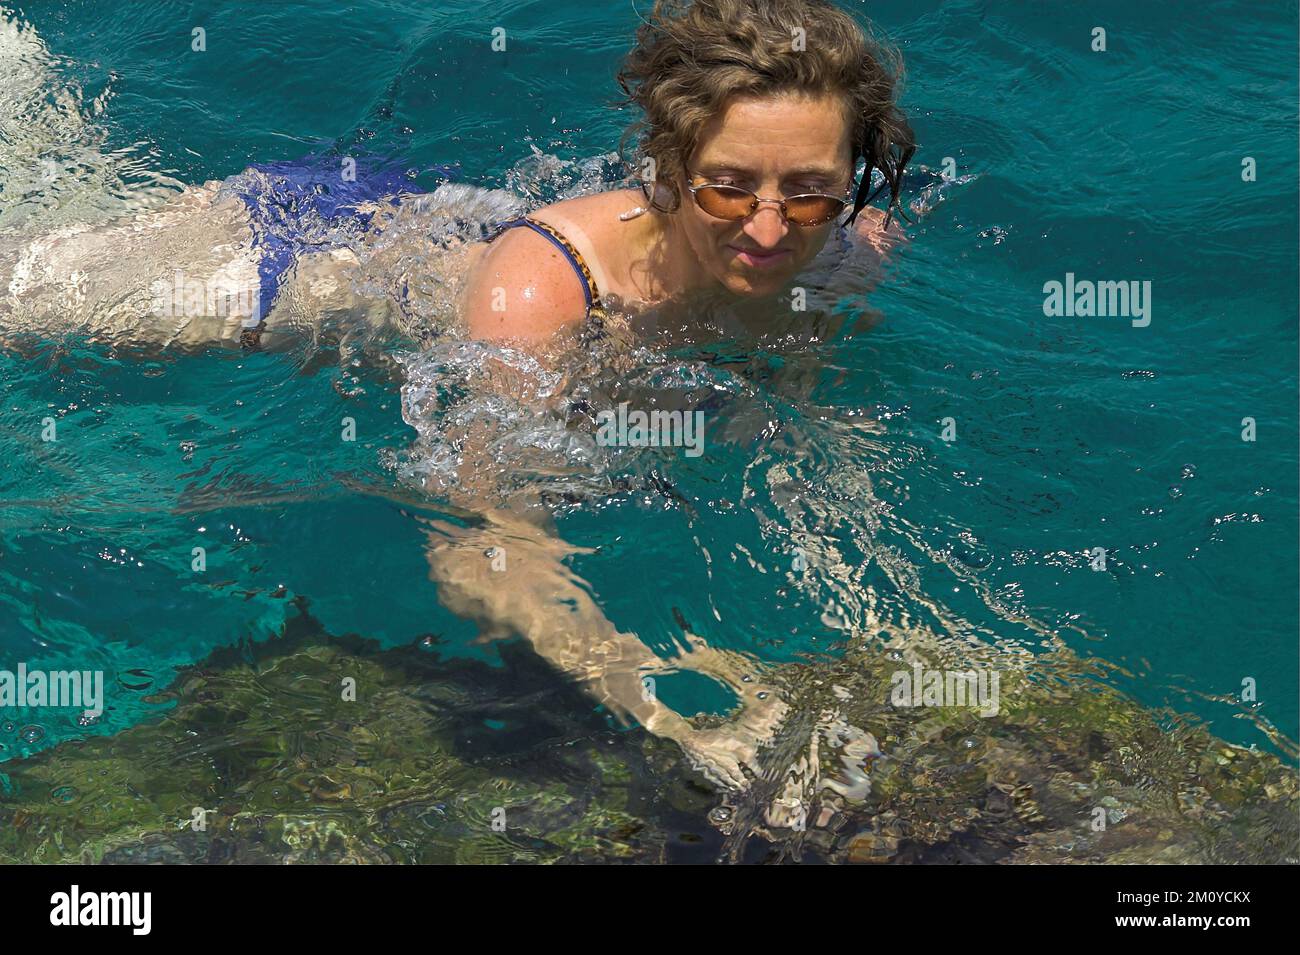 Hydra, Idra, Ύδρα, Grecja, Greece, Griechenland; A woman with glasses bathes in the sea; Eine Frau mit Brille badet im Meer; Kobieta kąpie się w morzu Stock Photo